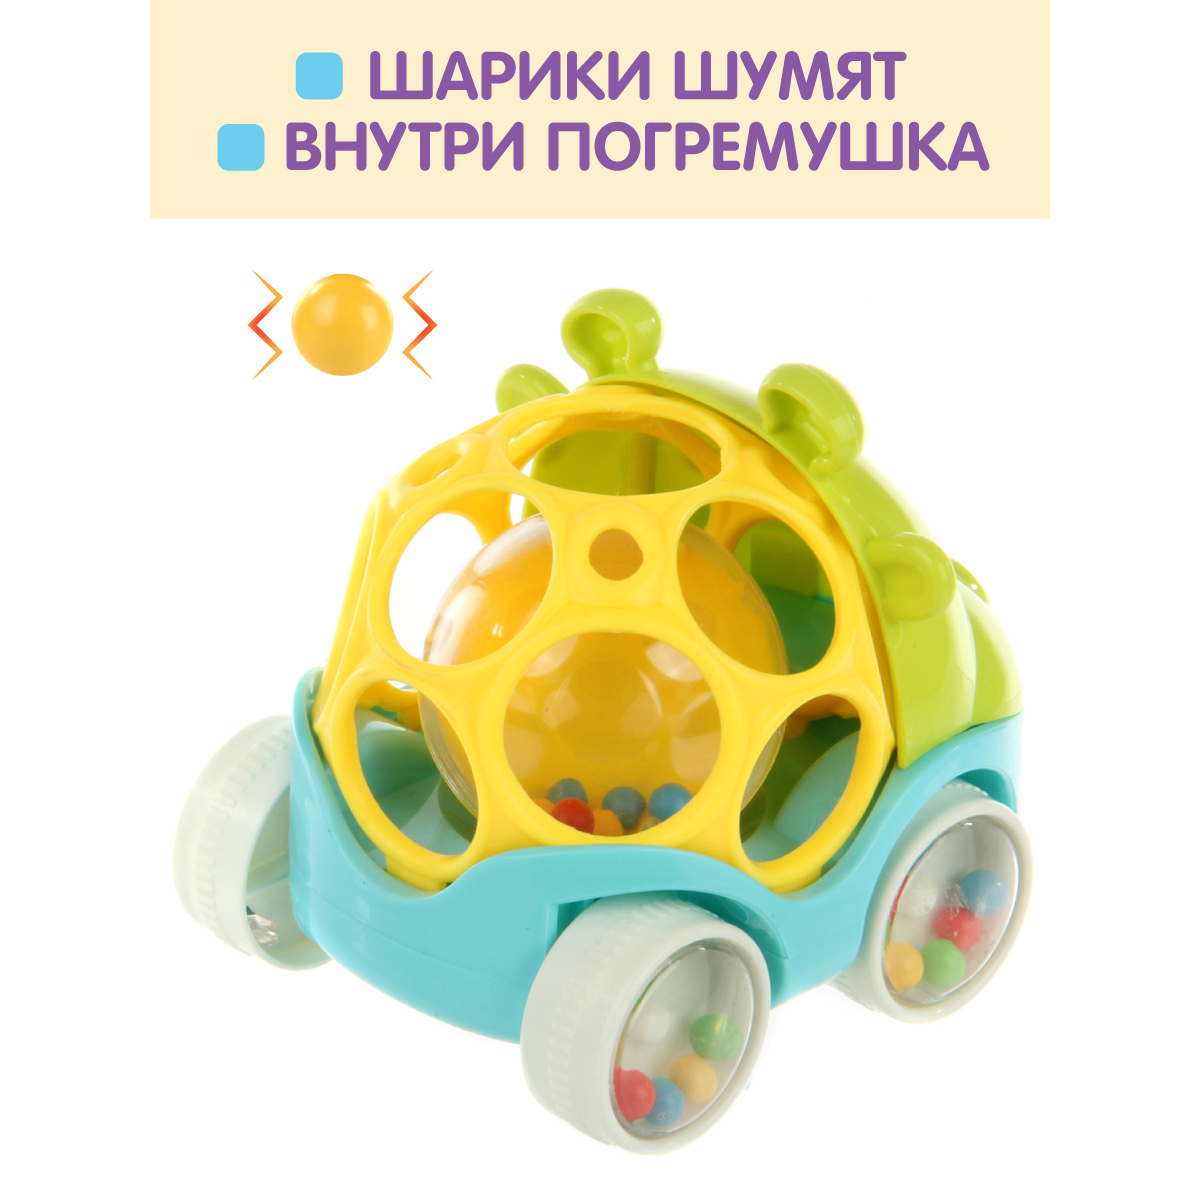 Развивающая игрушка Ути Пути Машинка погремушка - фото 4